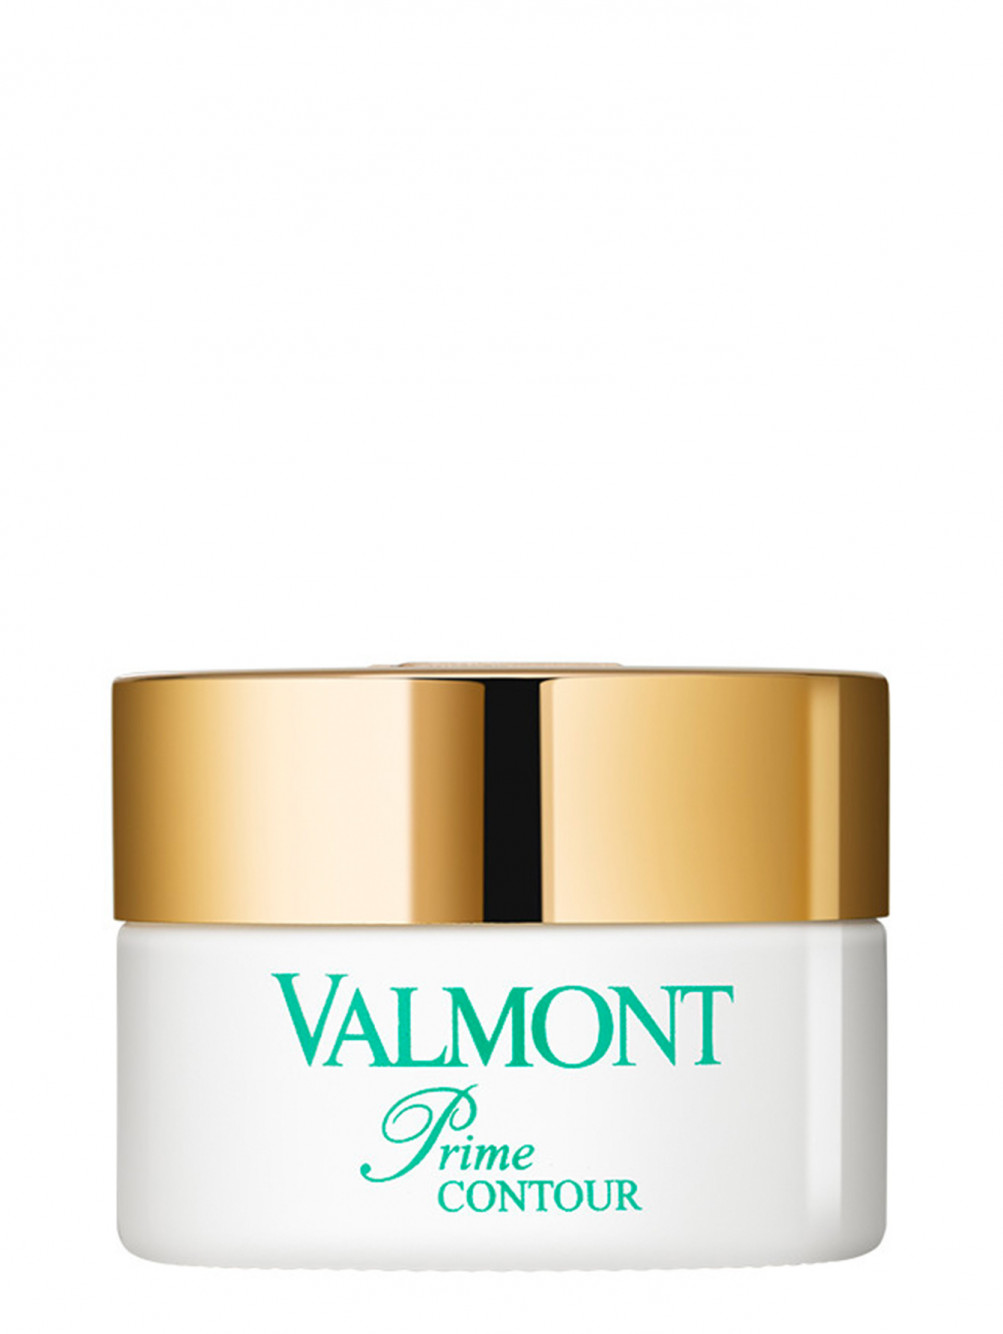 Valmont золушка. Valmont body 24 hour. Valmont крем. Valmont Prime Contour. Крем для кожи вокруг глаз.